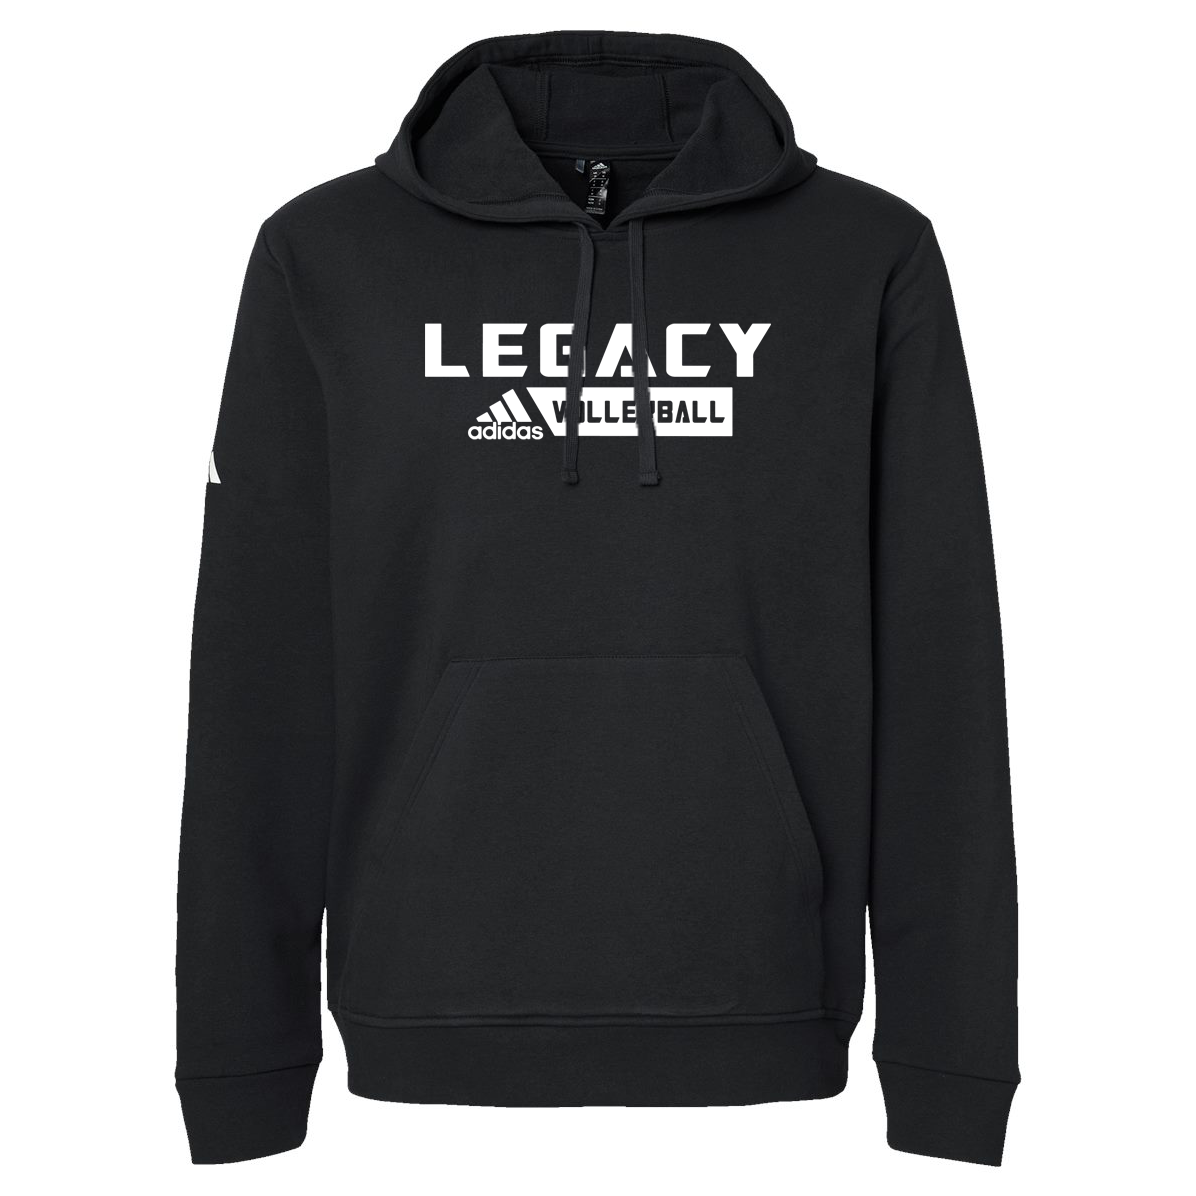 Legacy Volleyball Club Adidas Fleece Hooded Sweatshirt